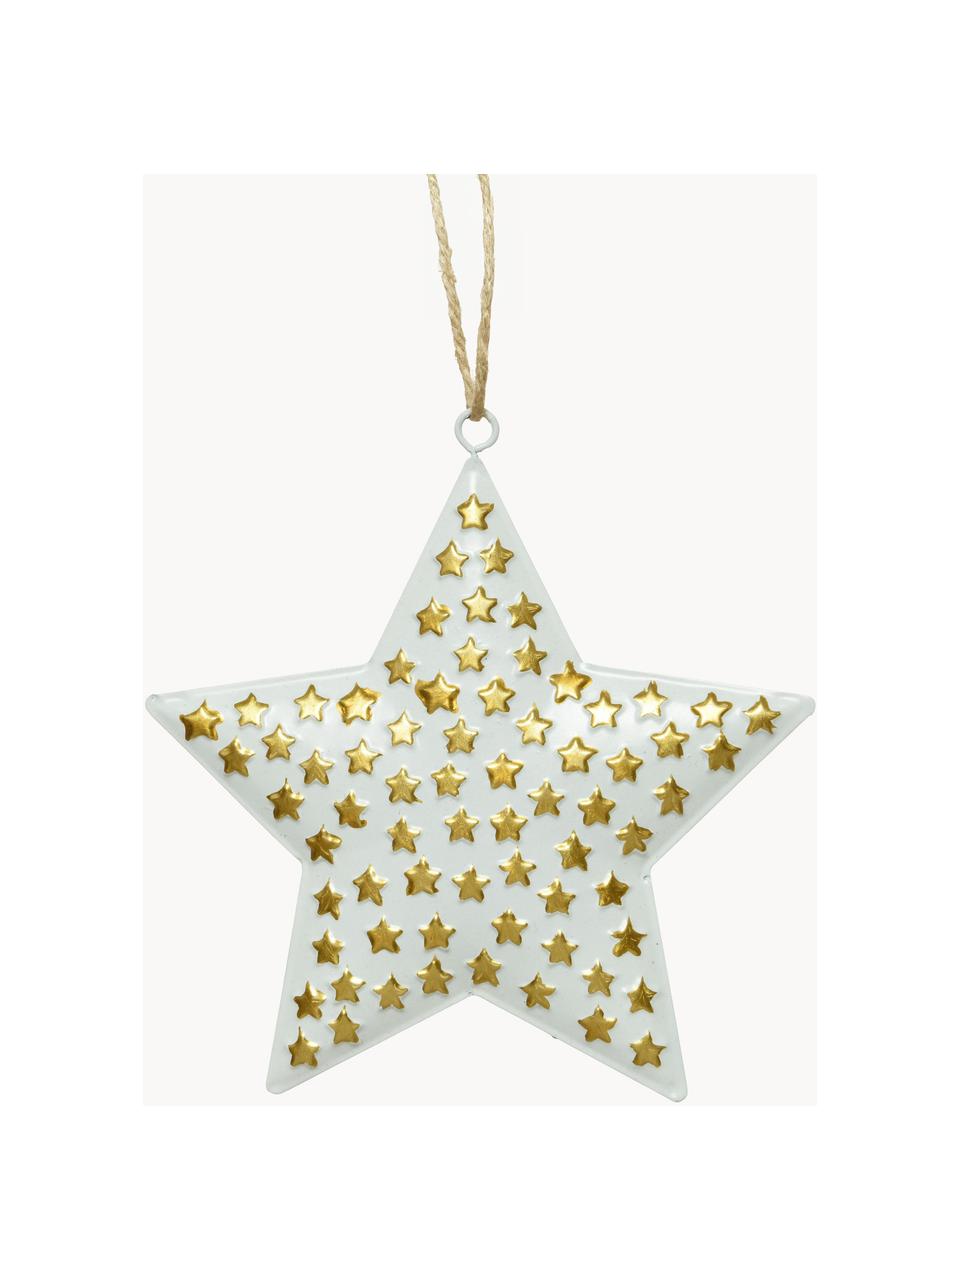 Sterrenhanger Million Stars, 4 stuks, Gecoat metaal, Wit, goudkleurig, B 13 x H 13 cm